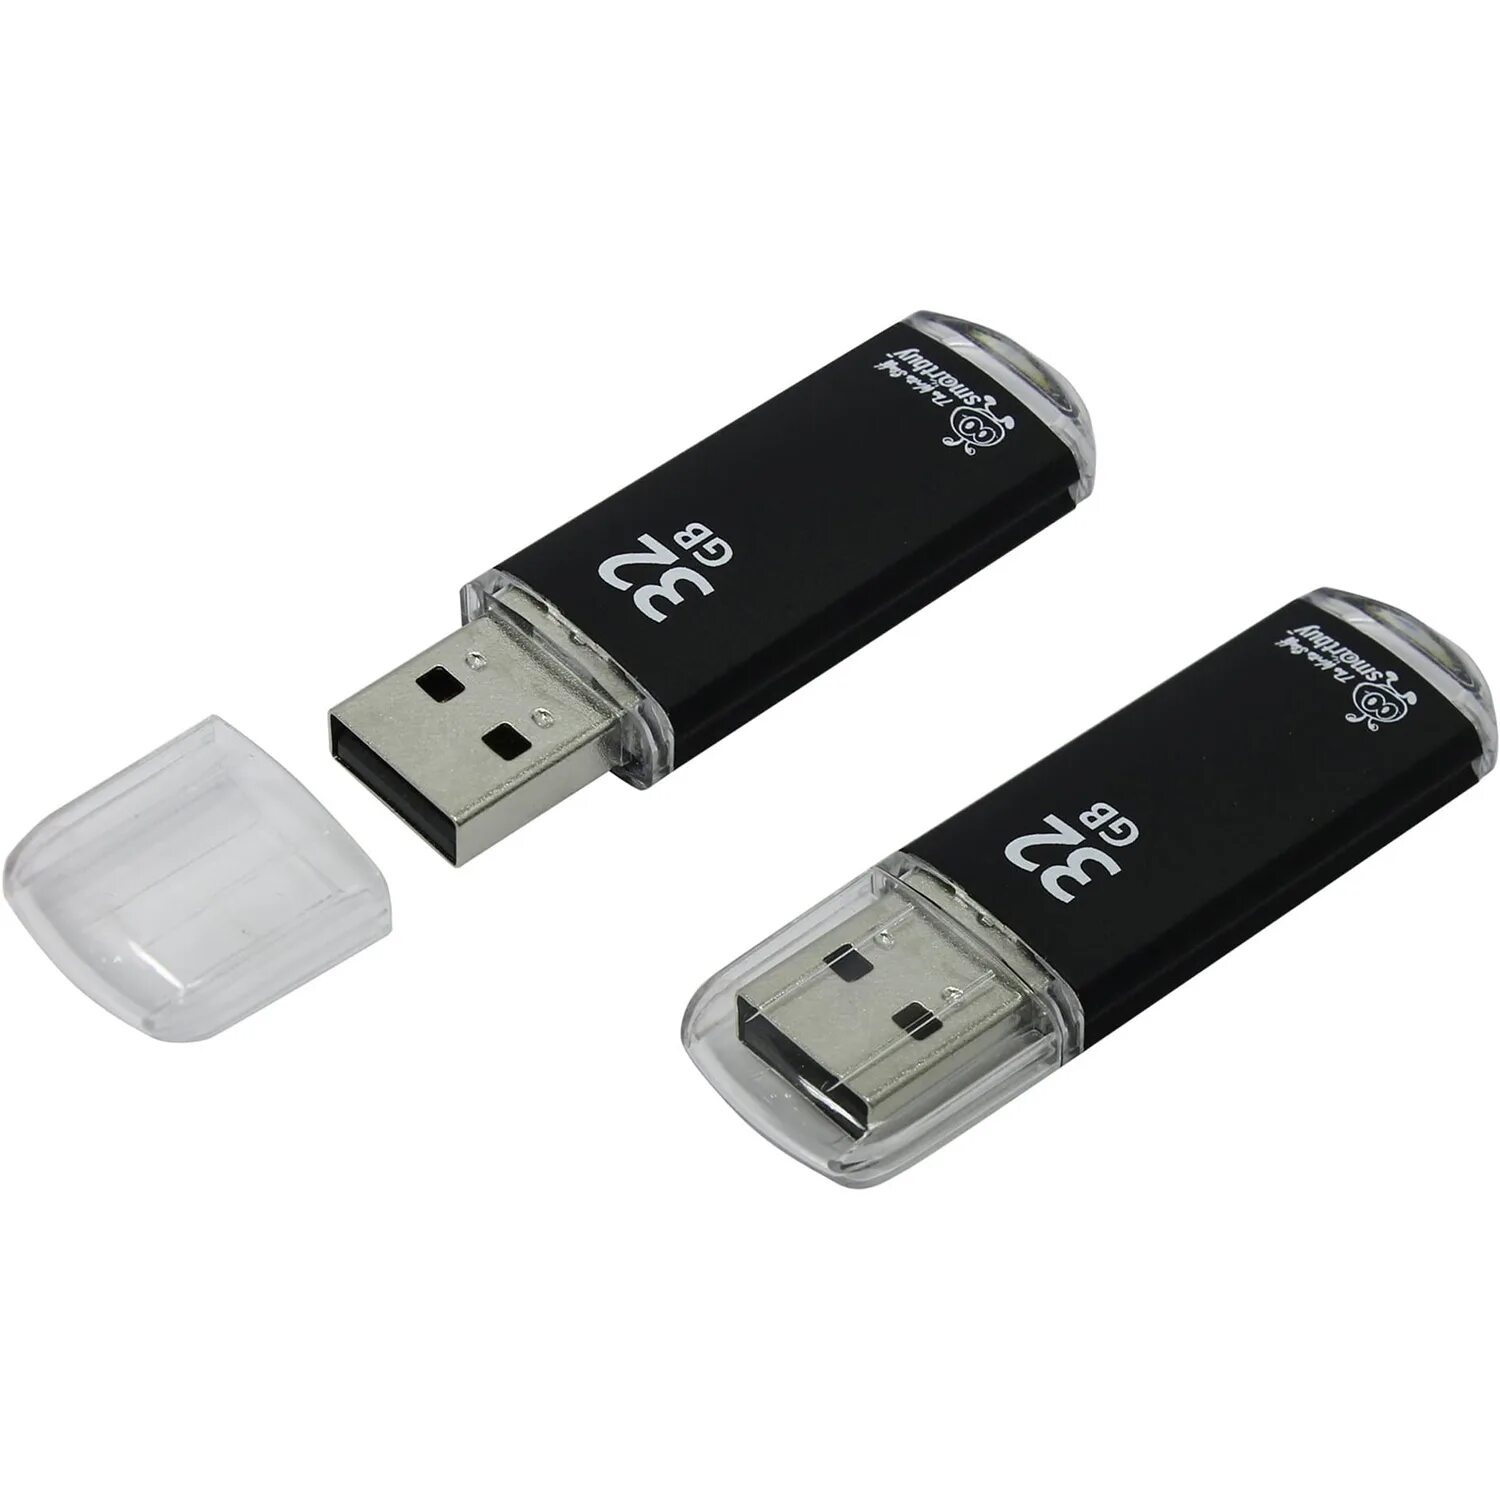 Флешка SMARTBUY V-Cut USB 2.0 32gb. USB-накопитель SMARTBUY 32gb v-Cut Black. Флешка СМАРТБАЙ 32. Флешка SMARTBUY 32gb.